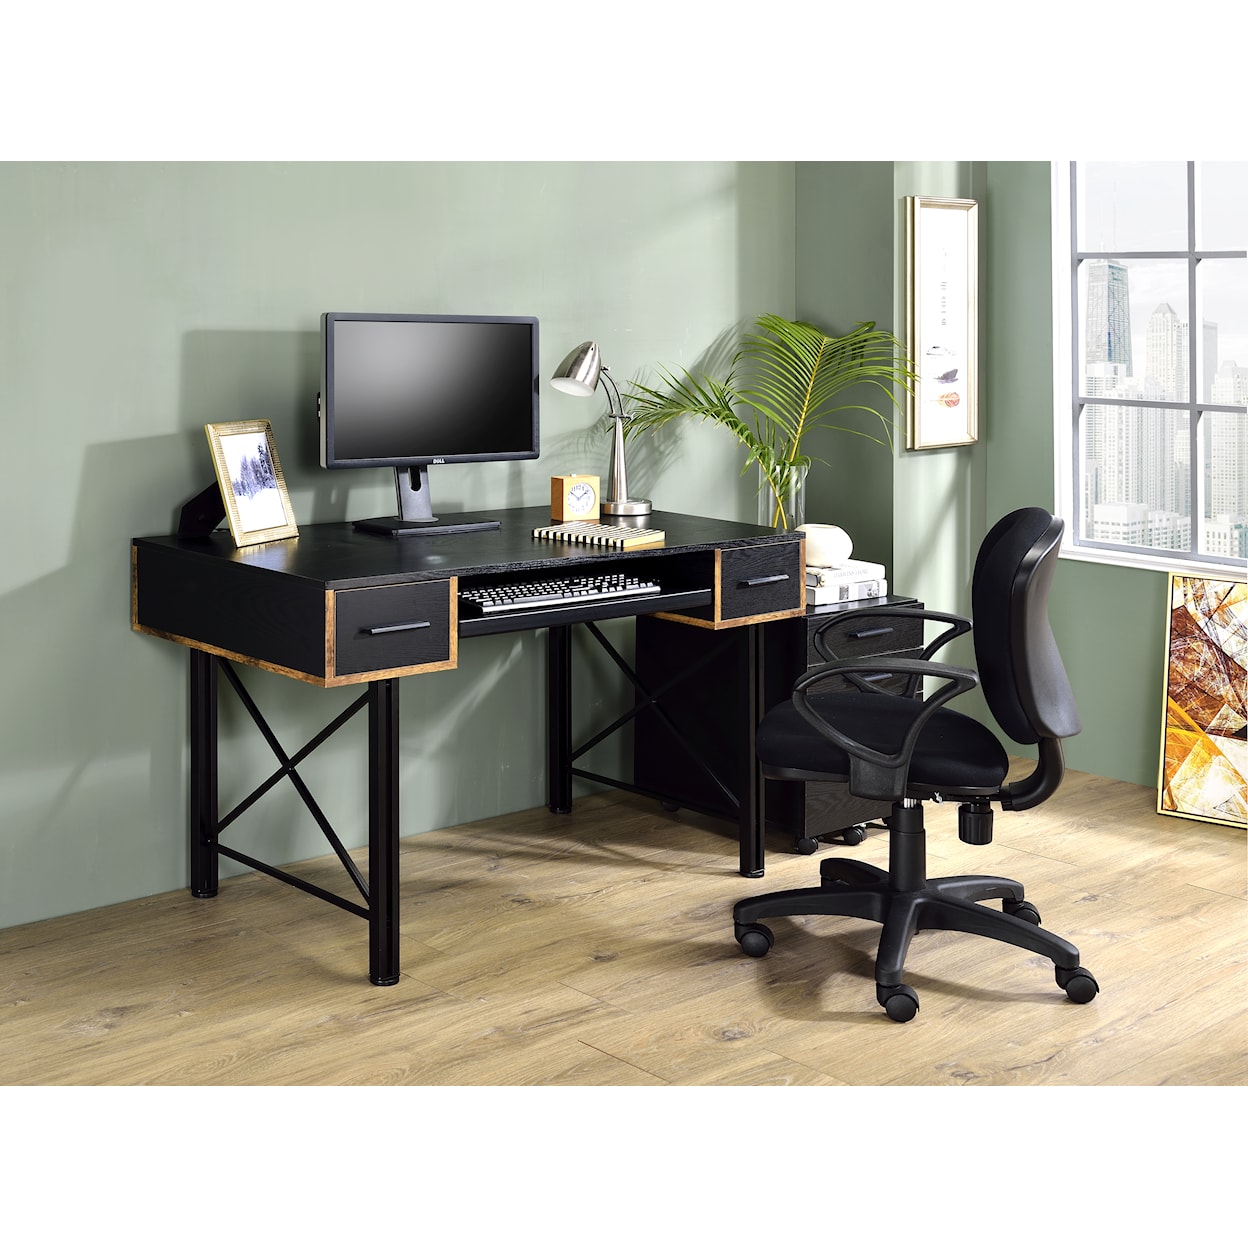 Acme Furniture Settea Computer Desk